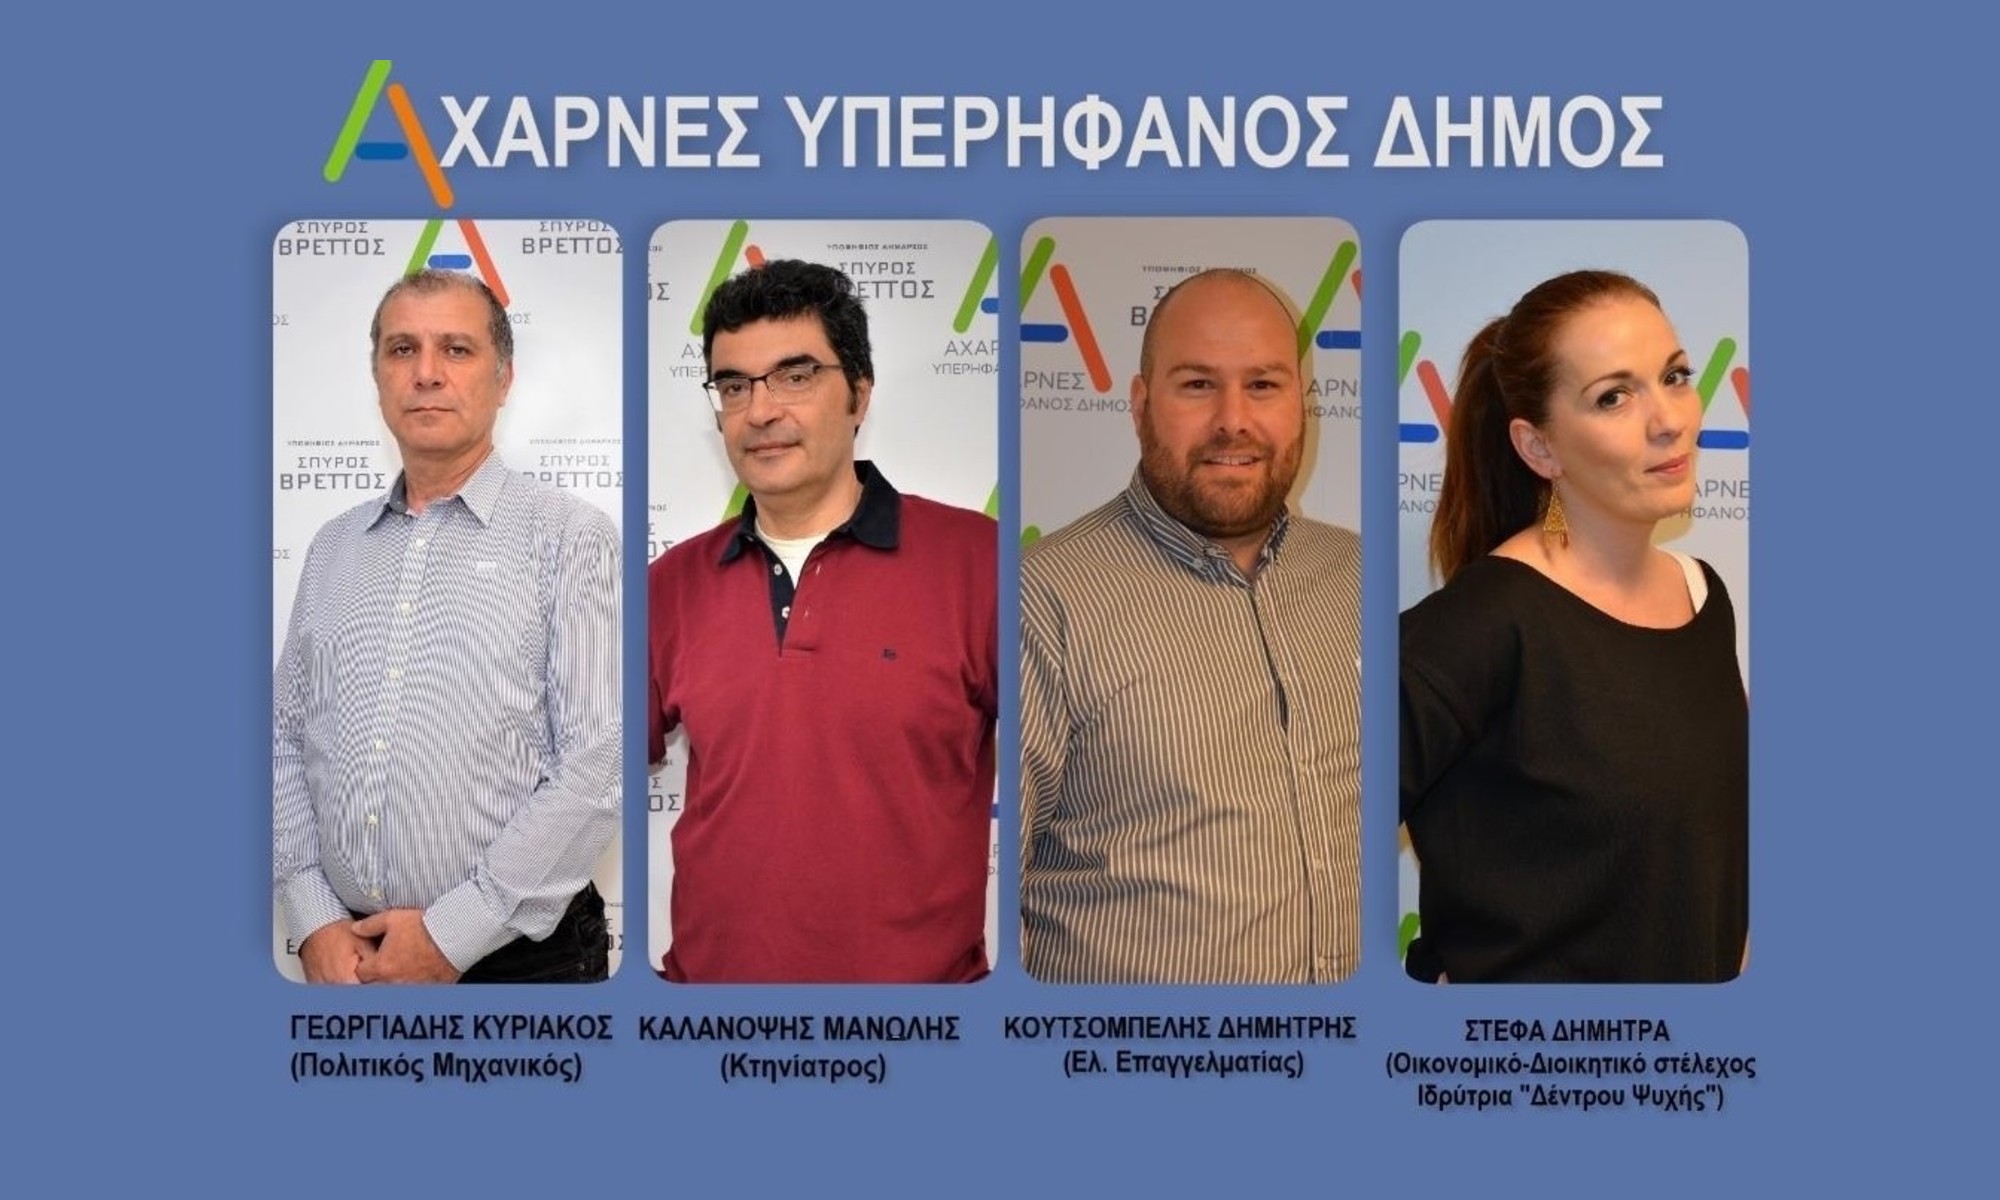 Συνεχίζονται οι ανακοινώσεις υποψηφίων από το συνδυασμό του Σπύρου Βρεττού «Αχαρνές Υπερήφανος Δήμος»